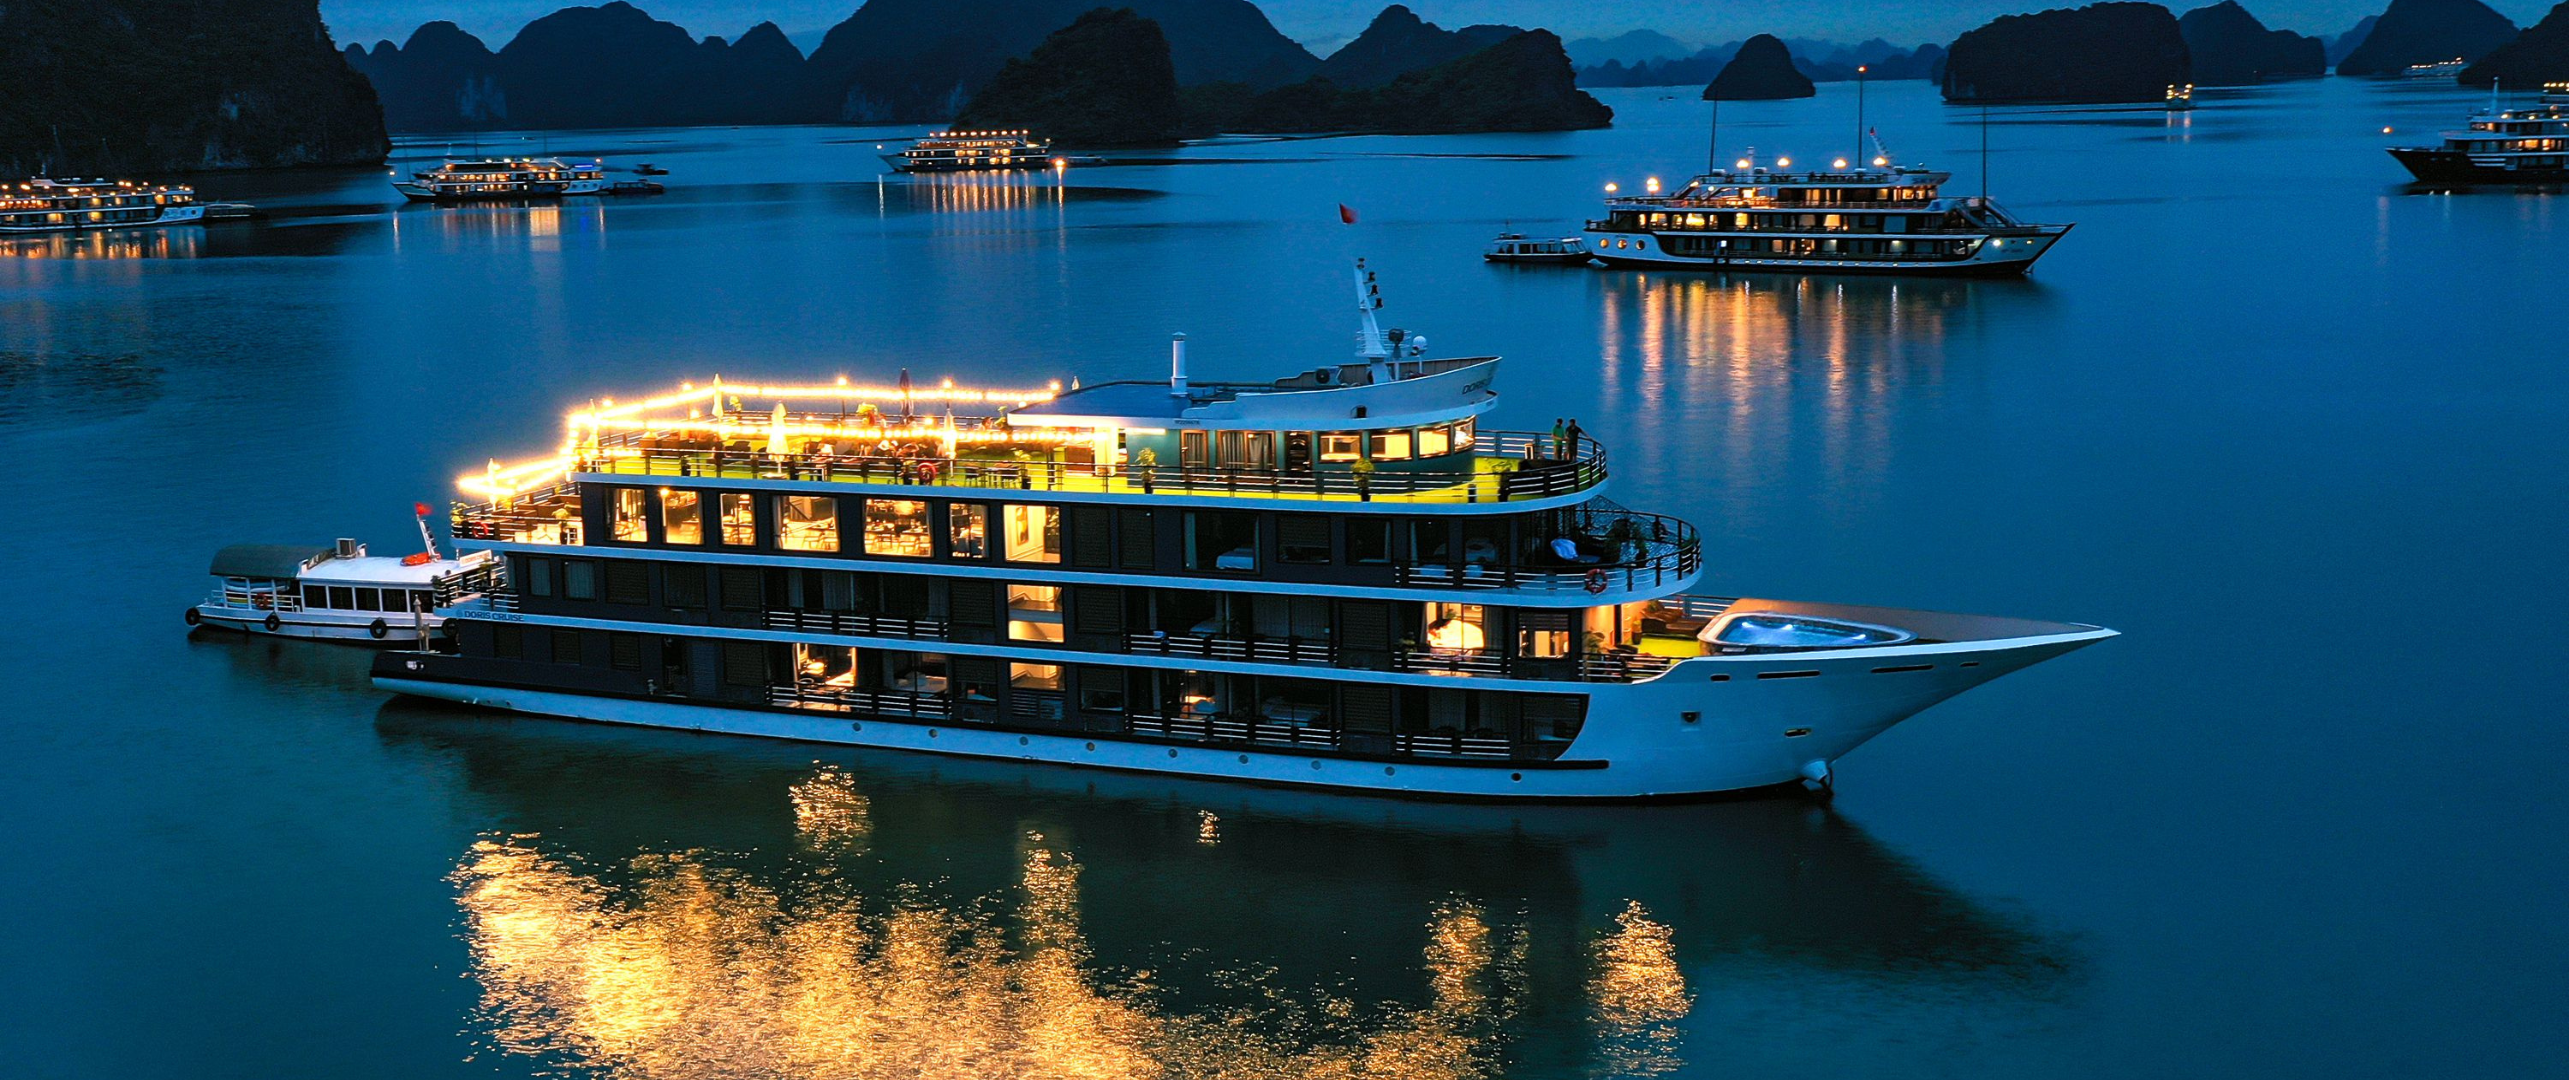 Luxury Vietnam Tour Package 9 Days